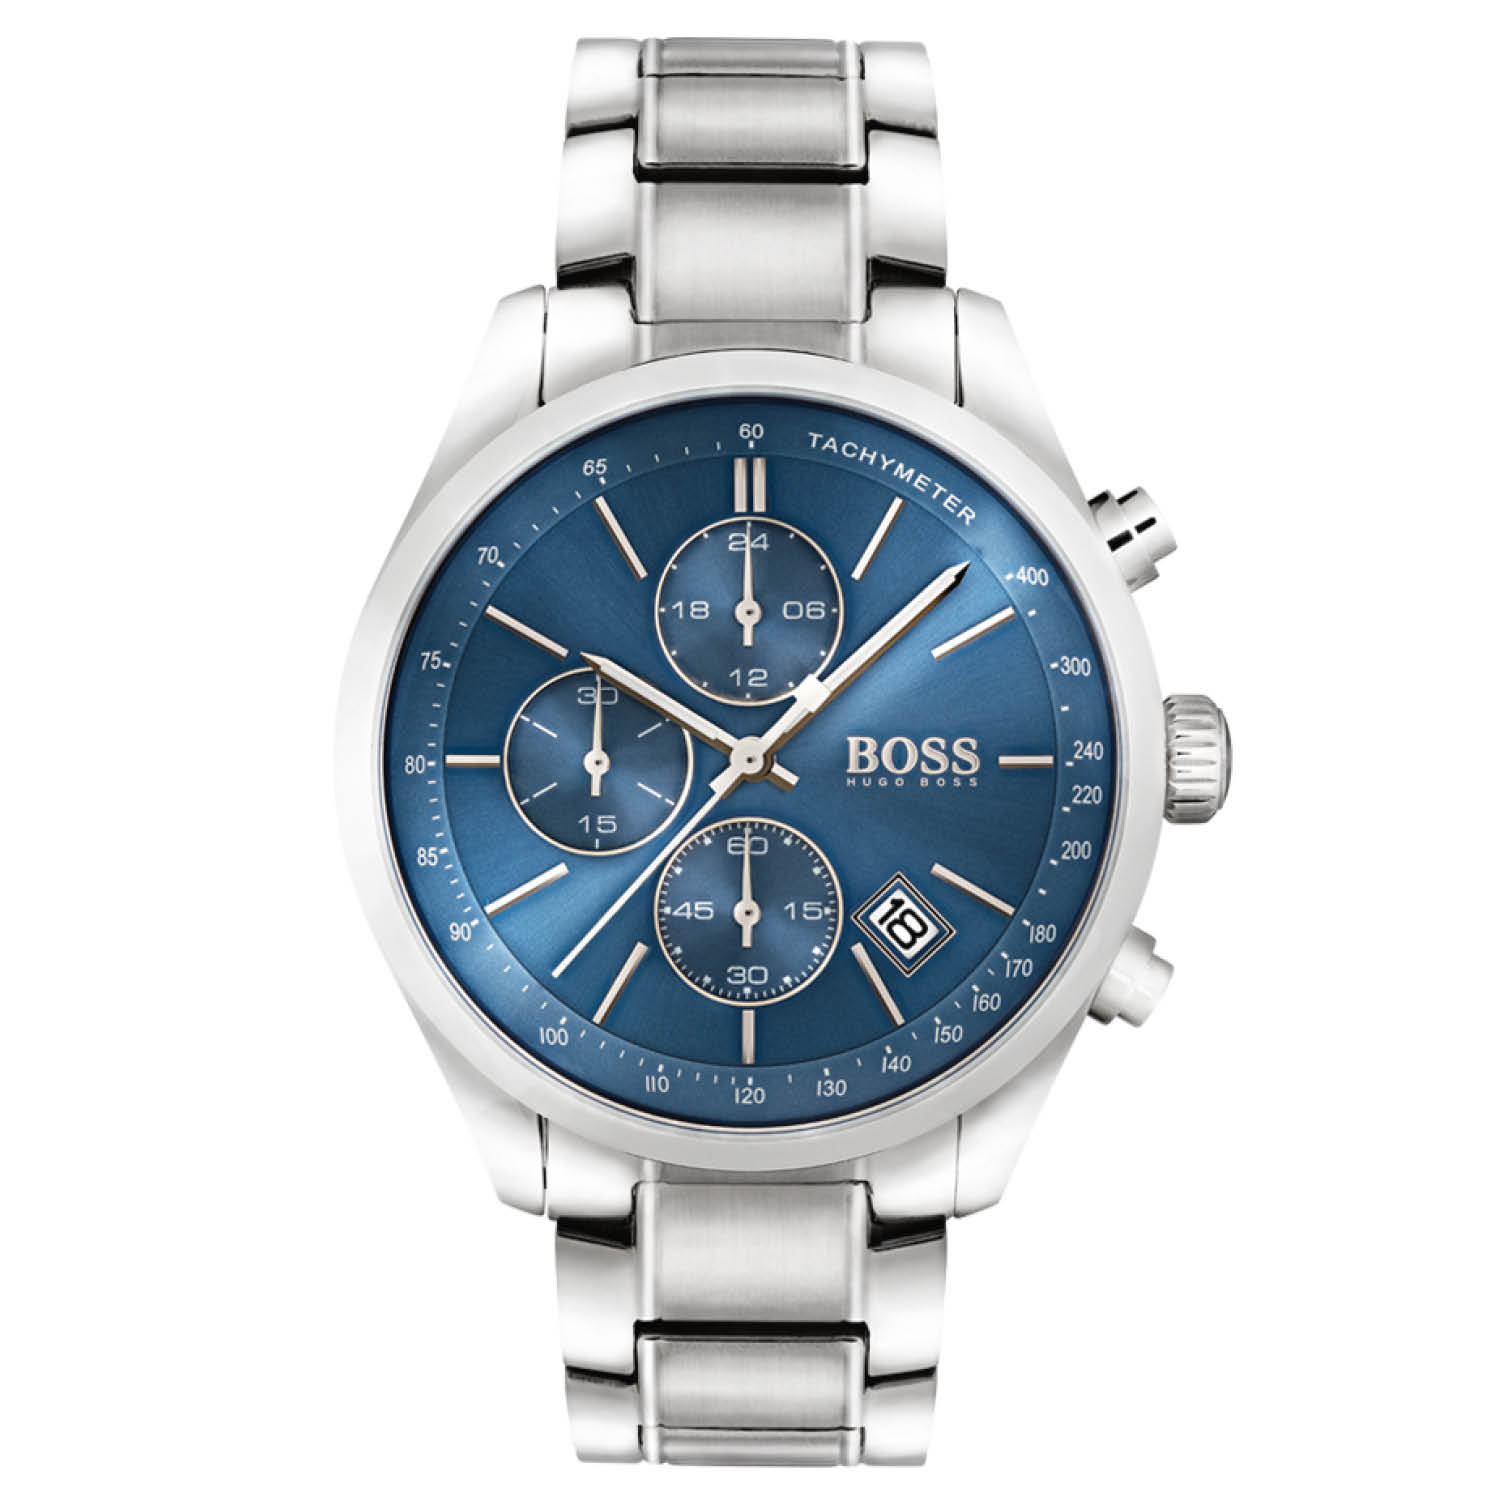 hoofdkussen bladeren vacuüm Horloge - Dit herenhorloge uit de BOSS Champion serie is een casual horloge.  Het horloge heeft mineraalglas, een blauwkleurige wijzerplaat en een  edelstaal horlogekast met een kastdiameter van 44 mm.